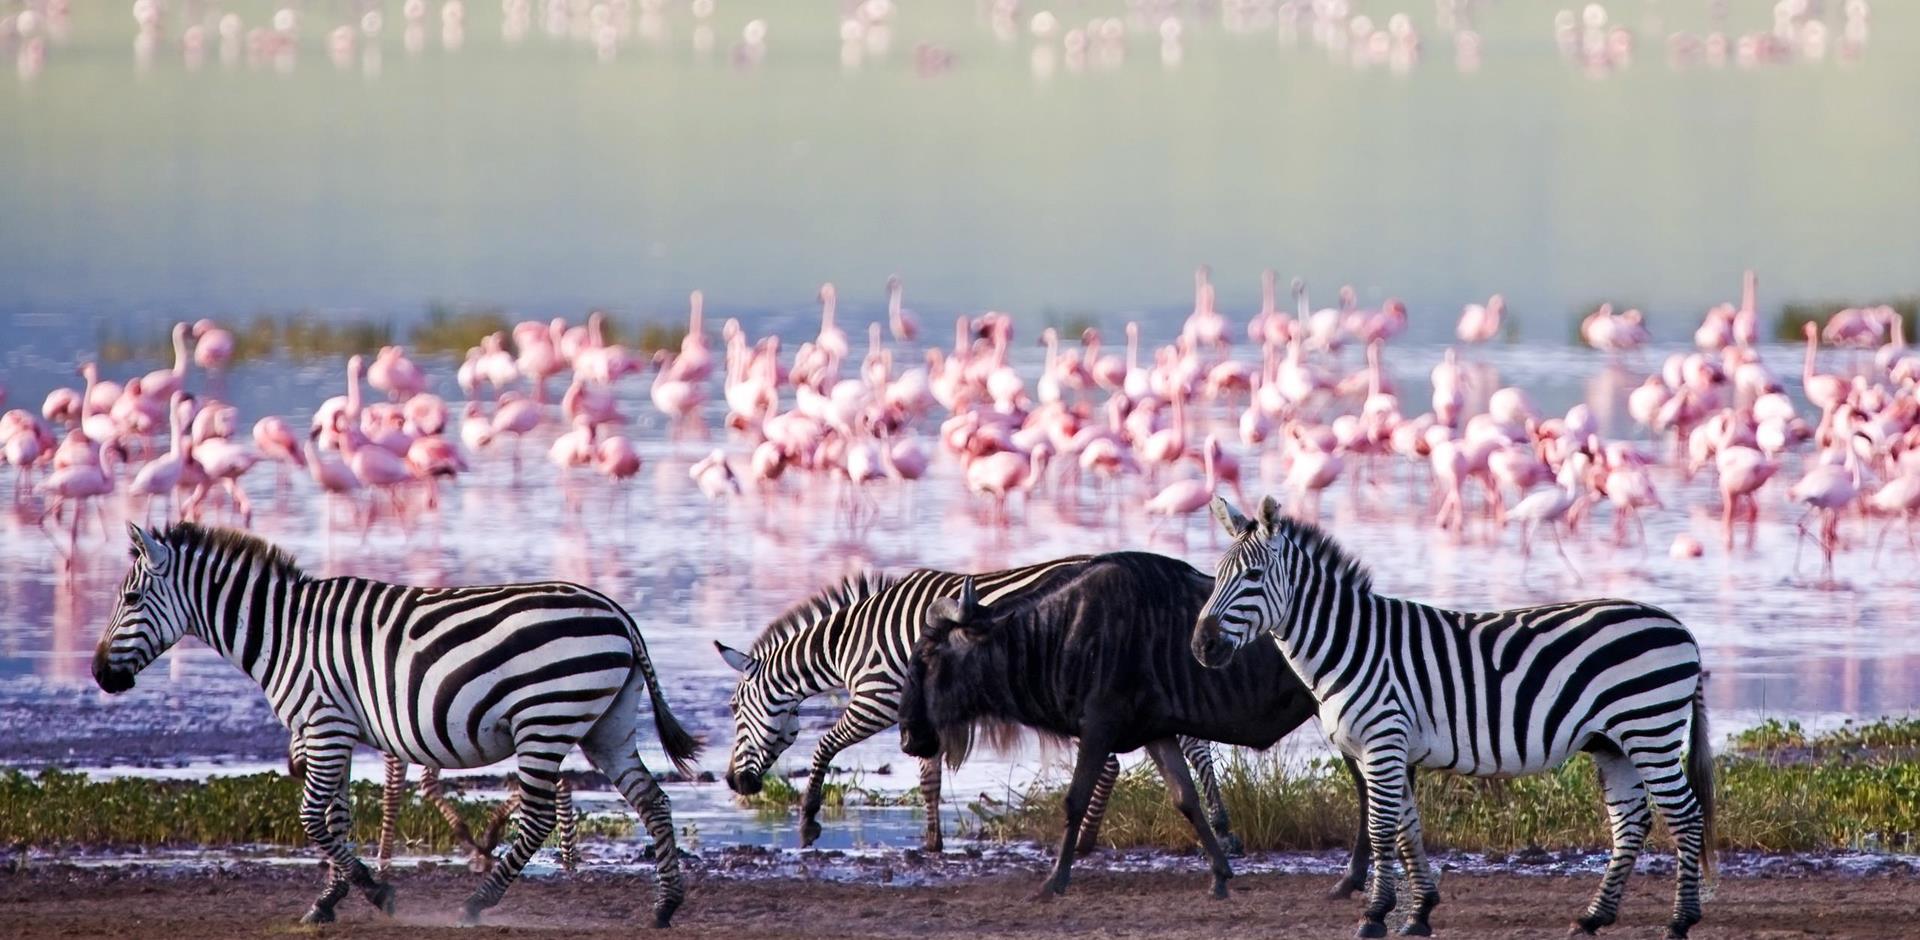 Wildlife of Ngorongoro Crater, Tanzania